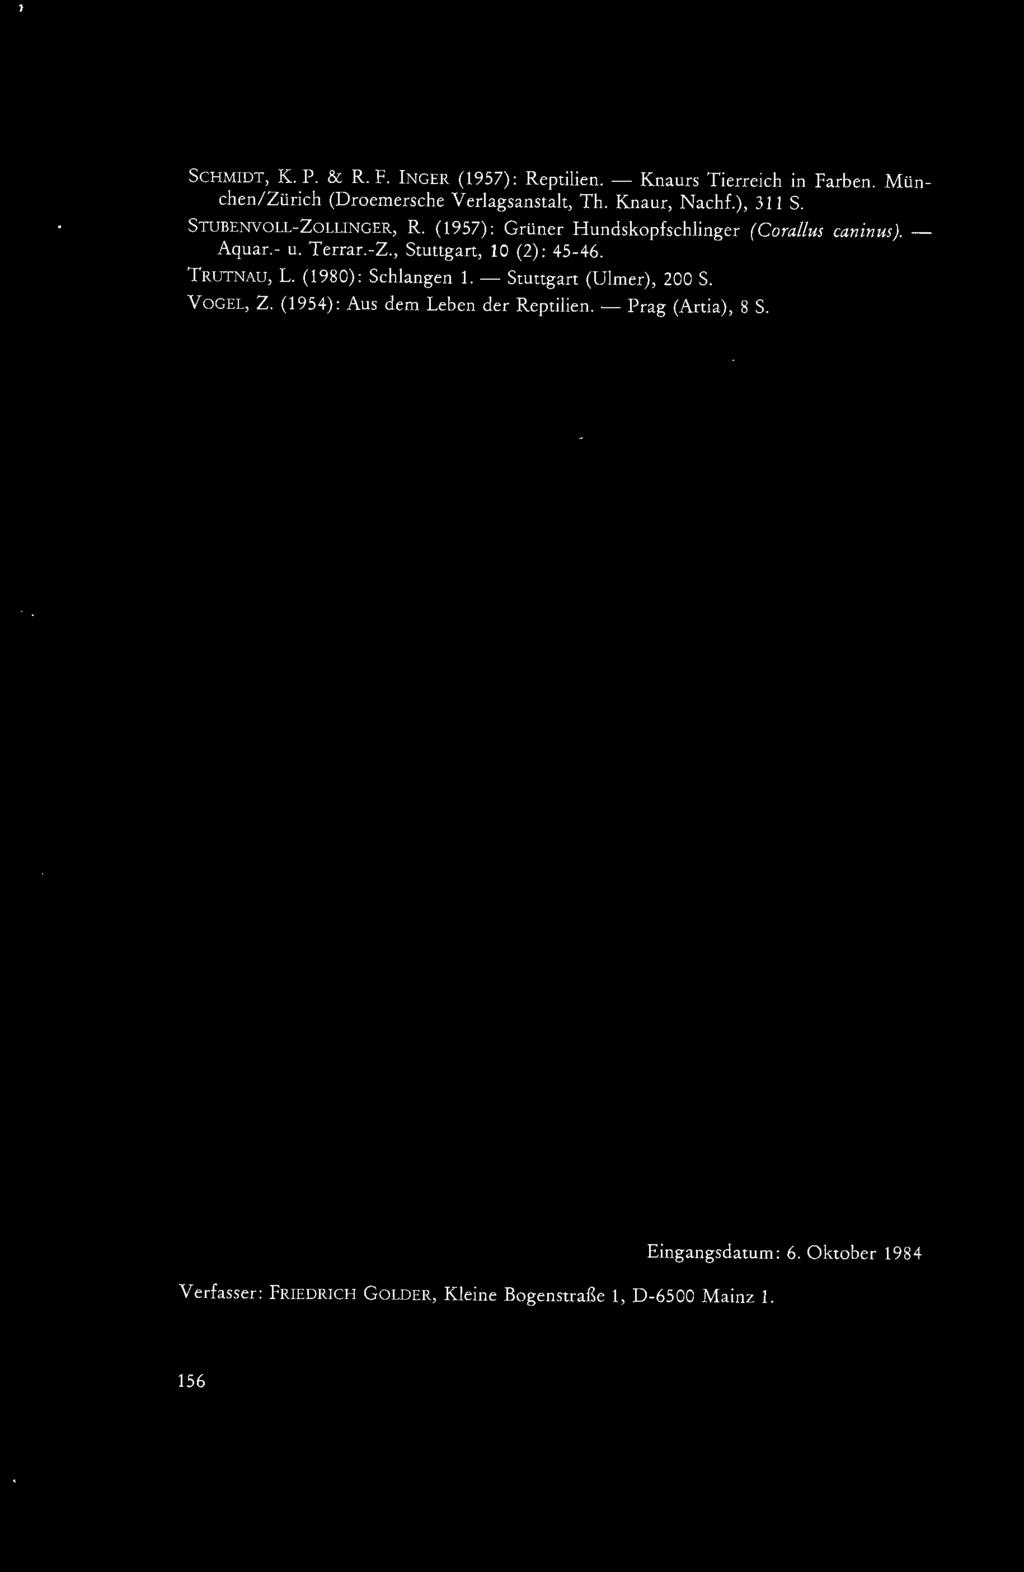 TRUTNAU, L. ( 1980): Schlangen 1. - Stuttgart (Ulmer), 200 S. VOGEL, Z. (1954): Aus dem Leben der Reptilien.